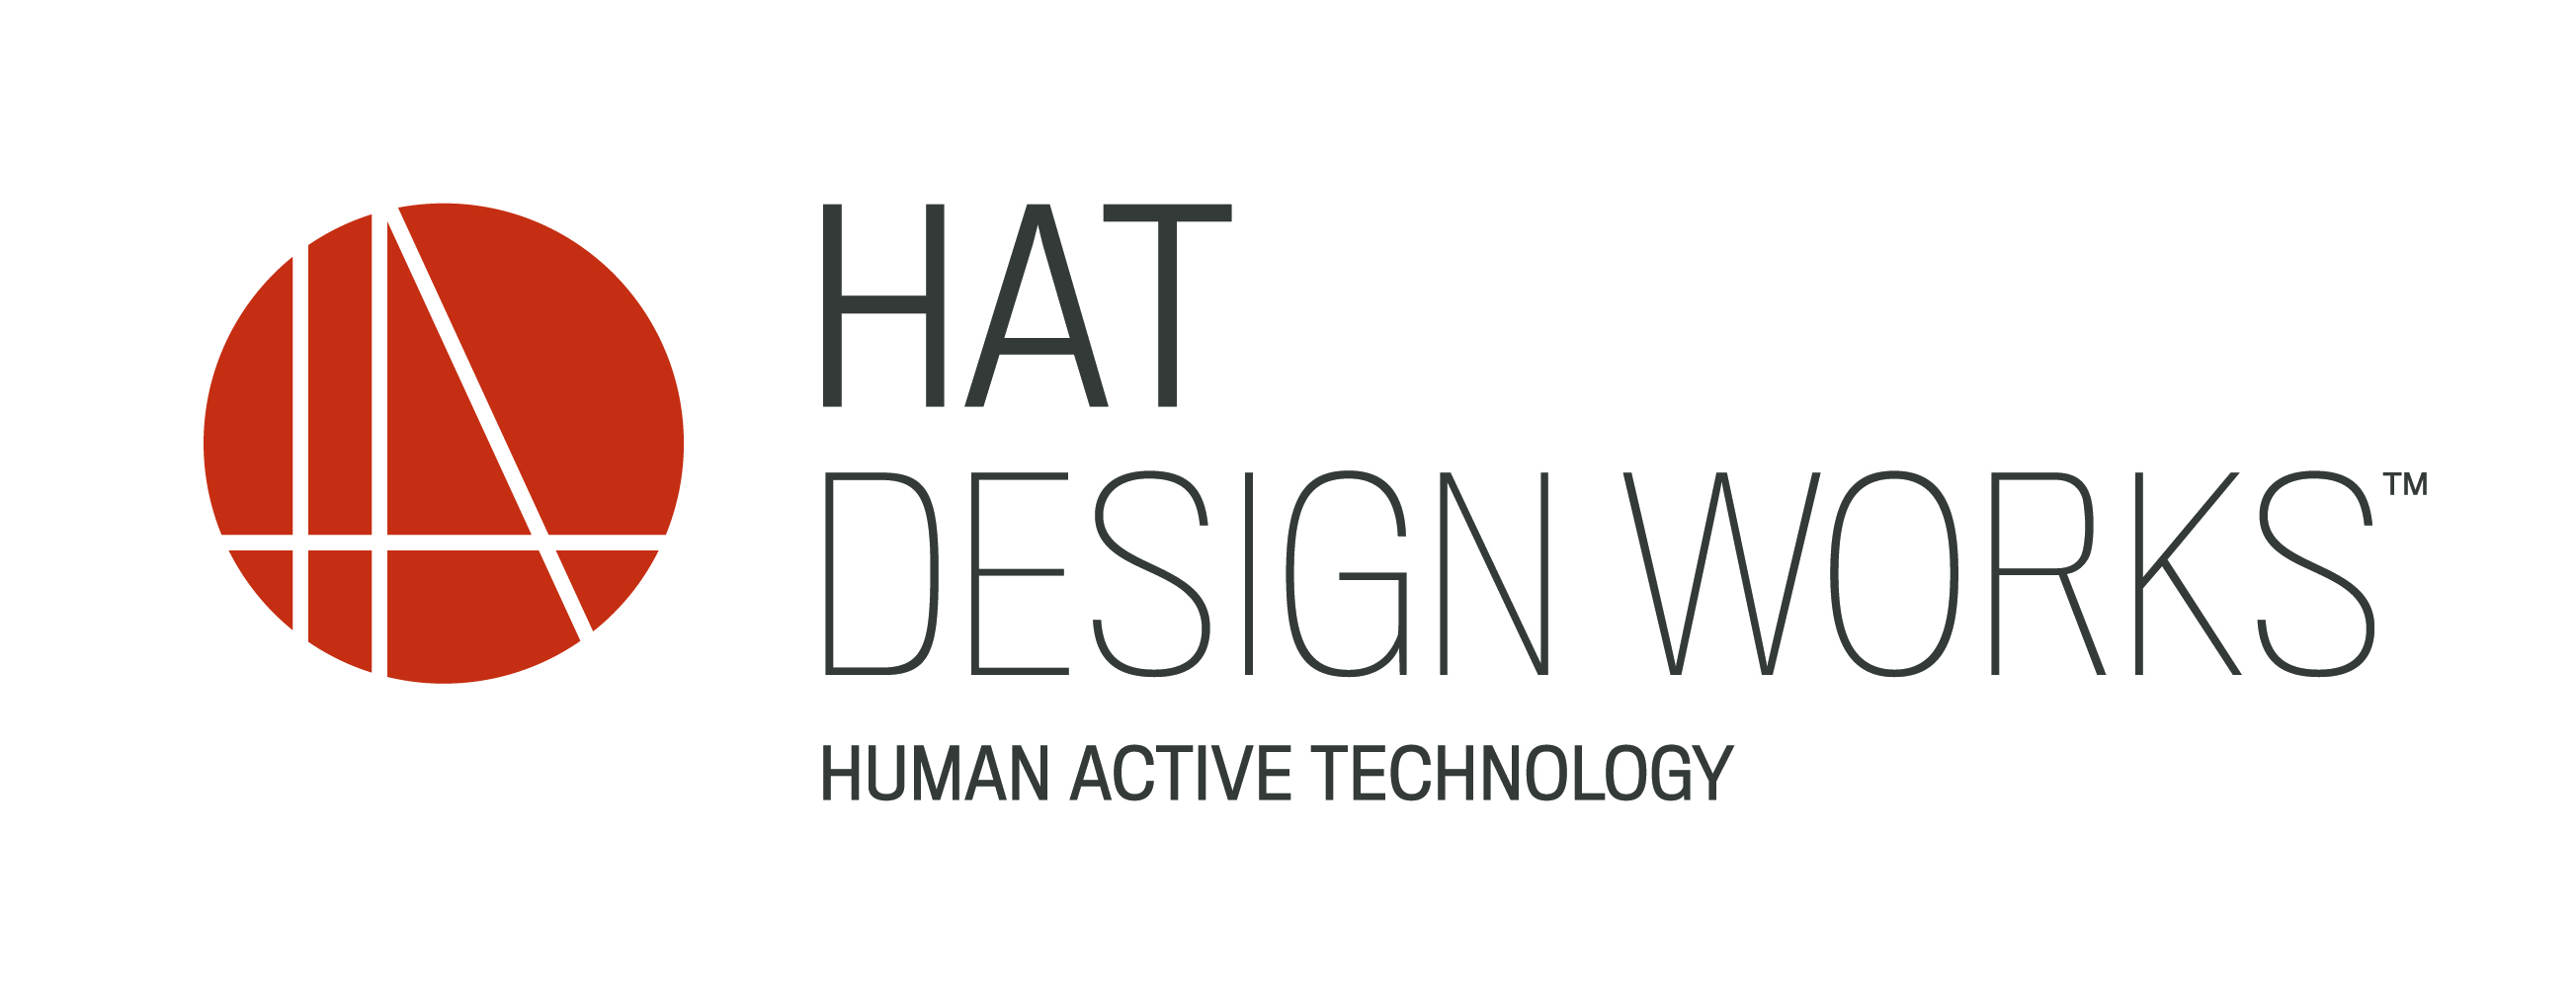 hat-design-works_h_color